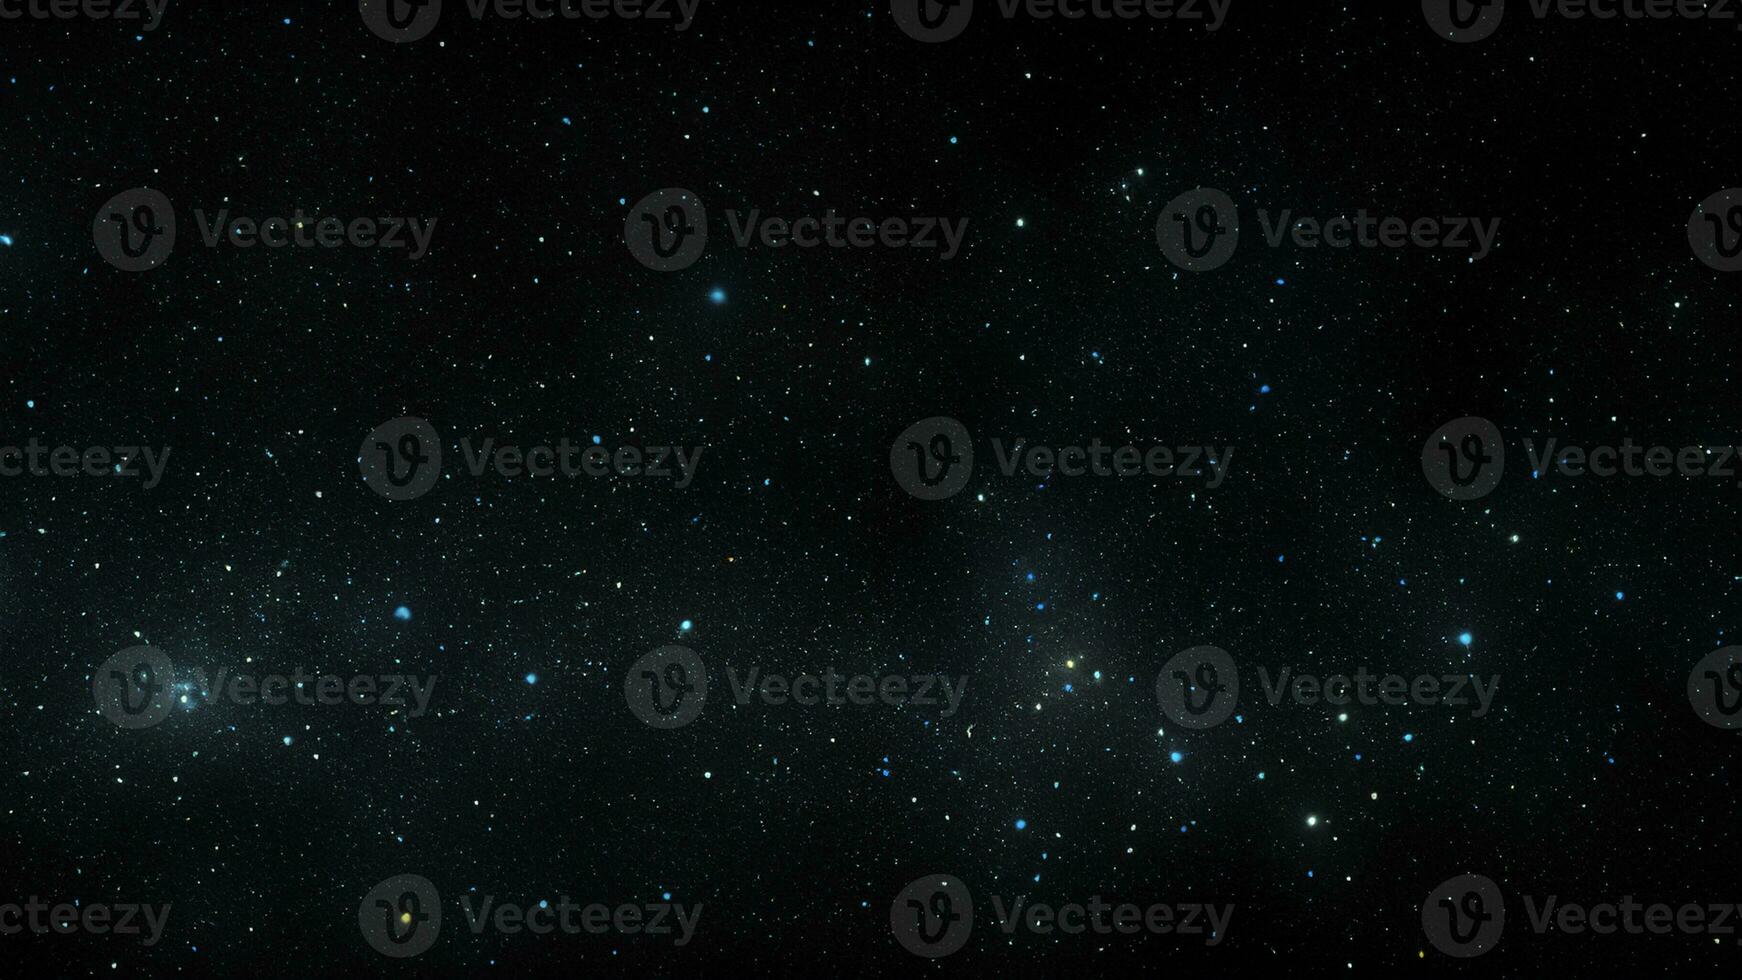 cielo nocturno con estrellas brillando sobre fondo negro foto